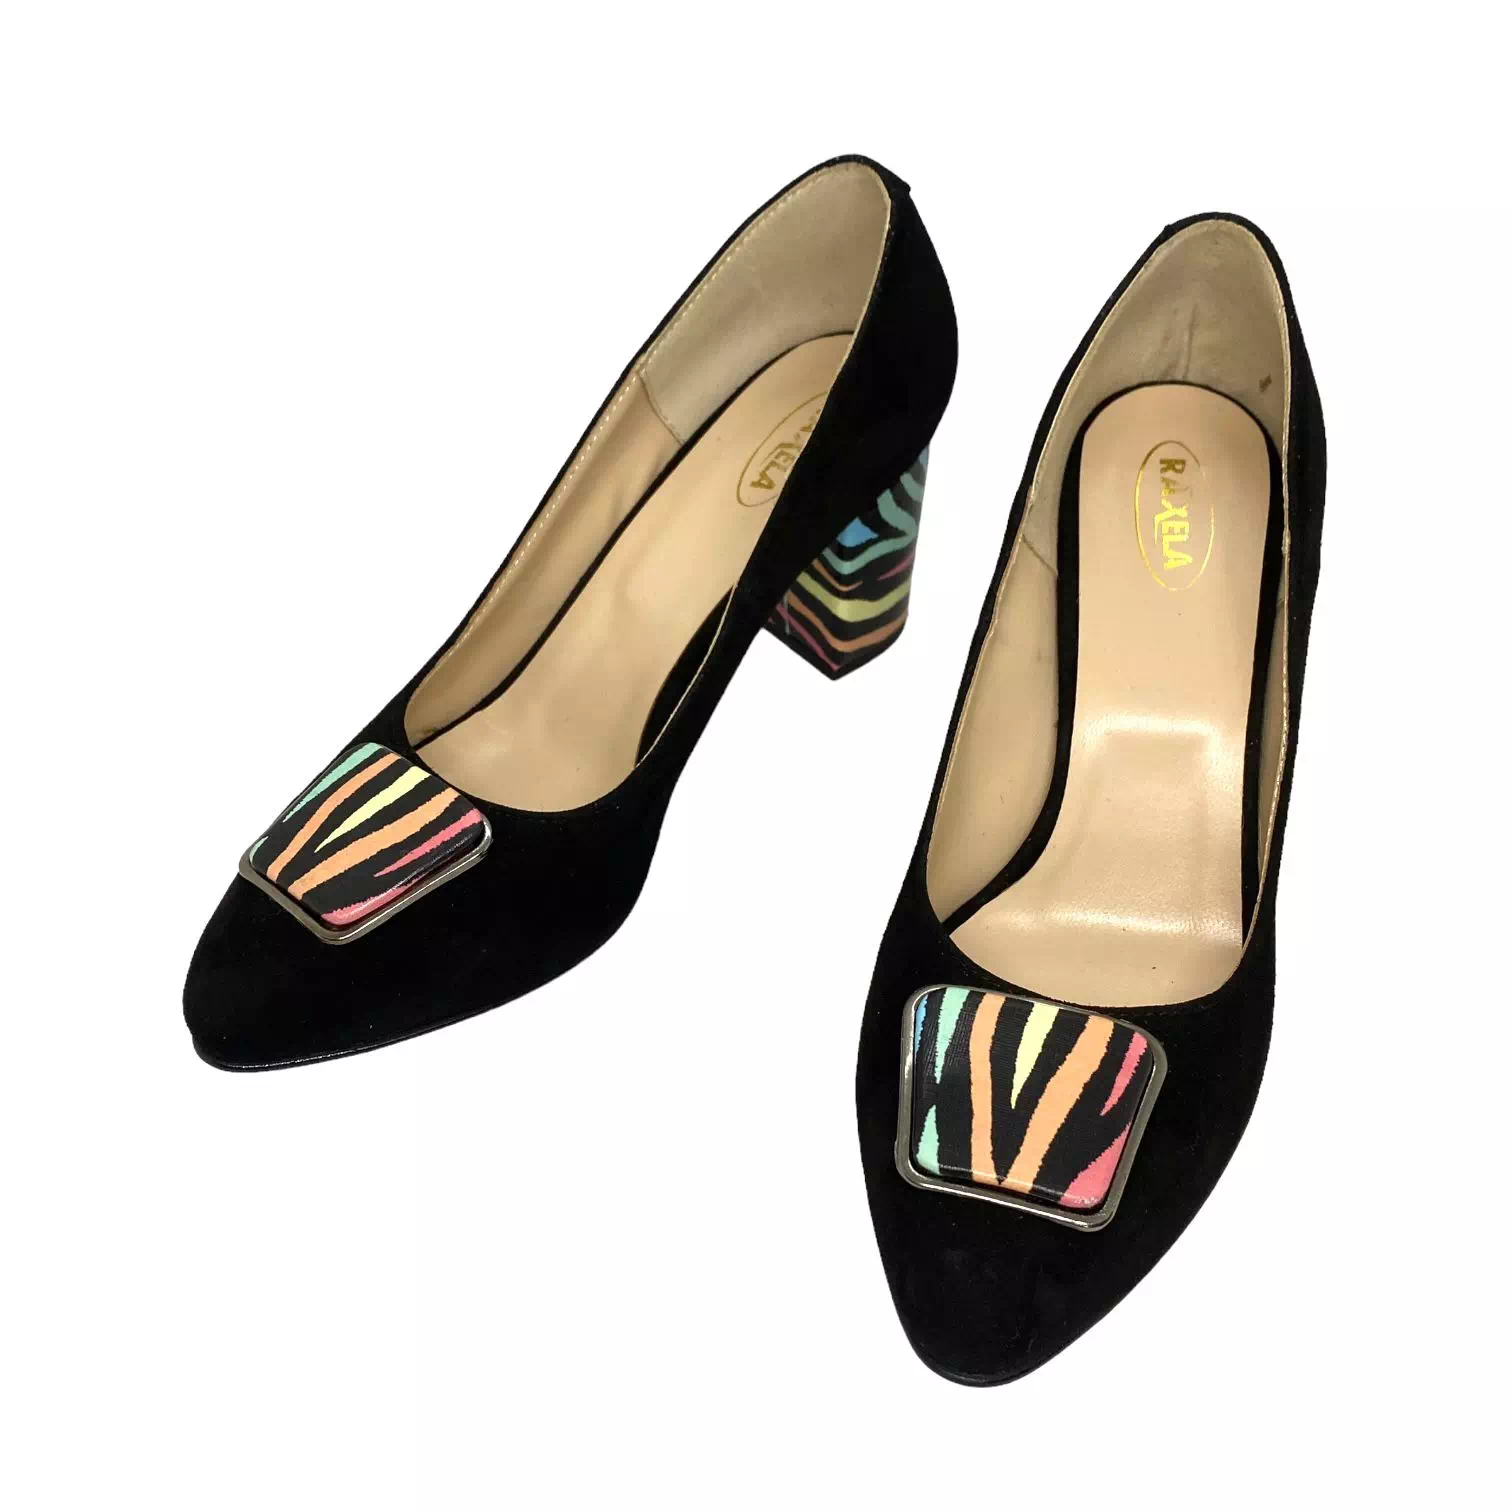 Pantofi Raxela negri cu accesoriu si detalii colorate